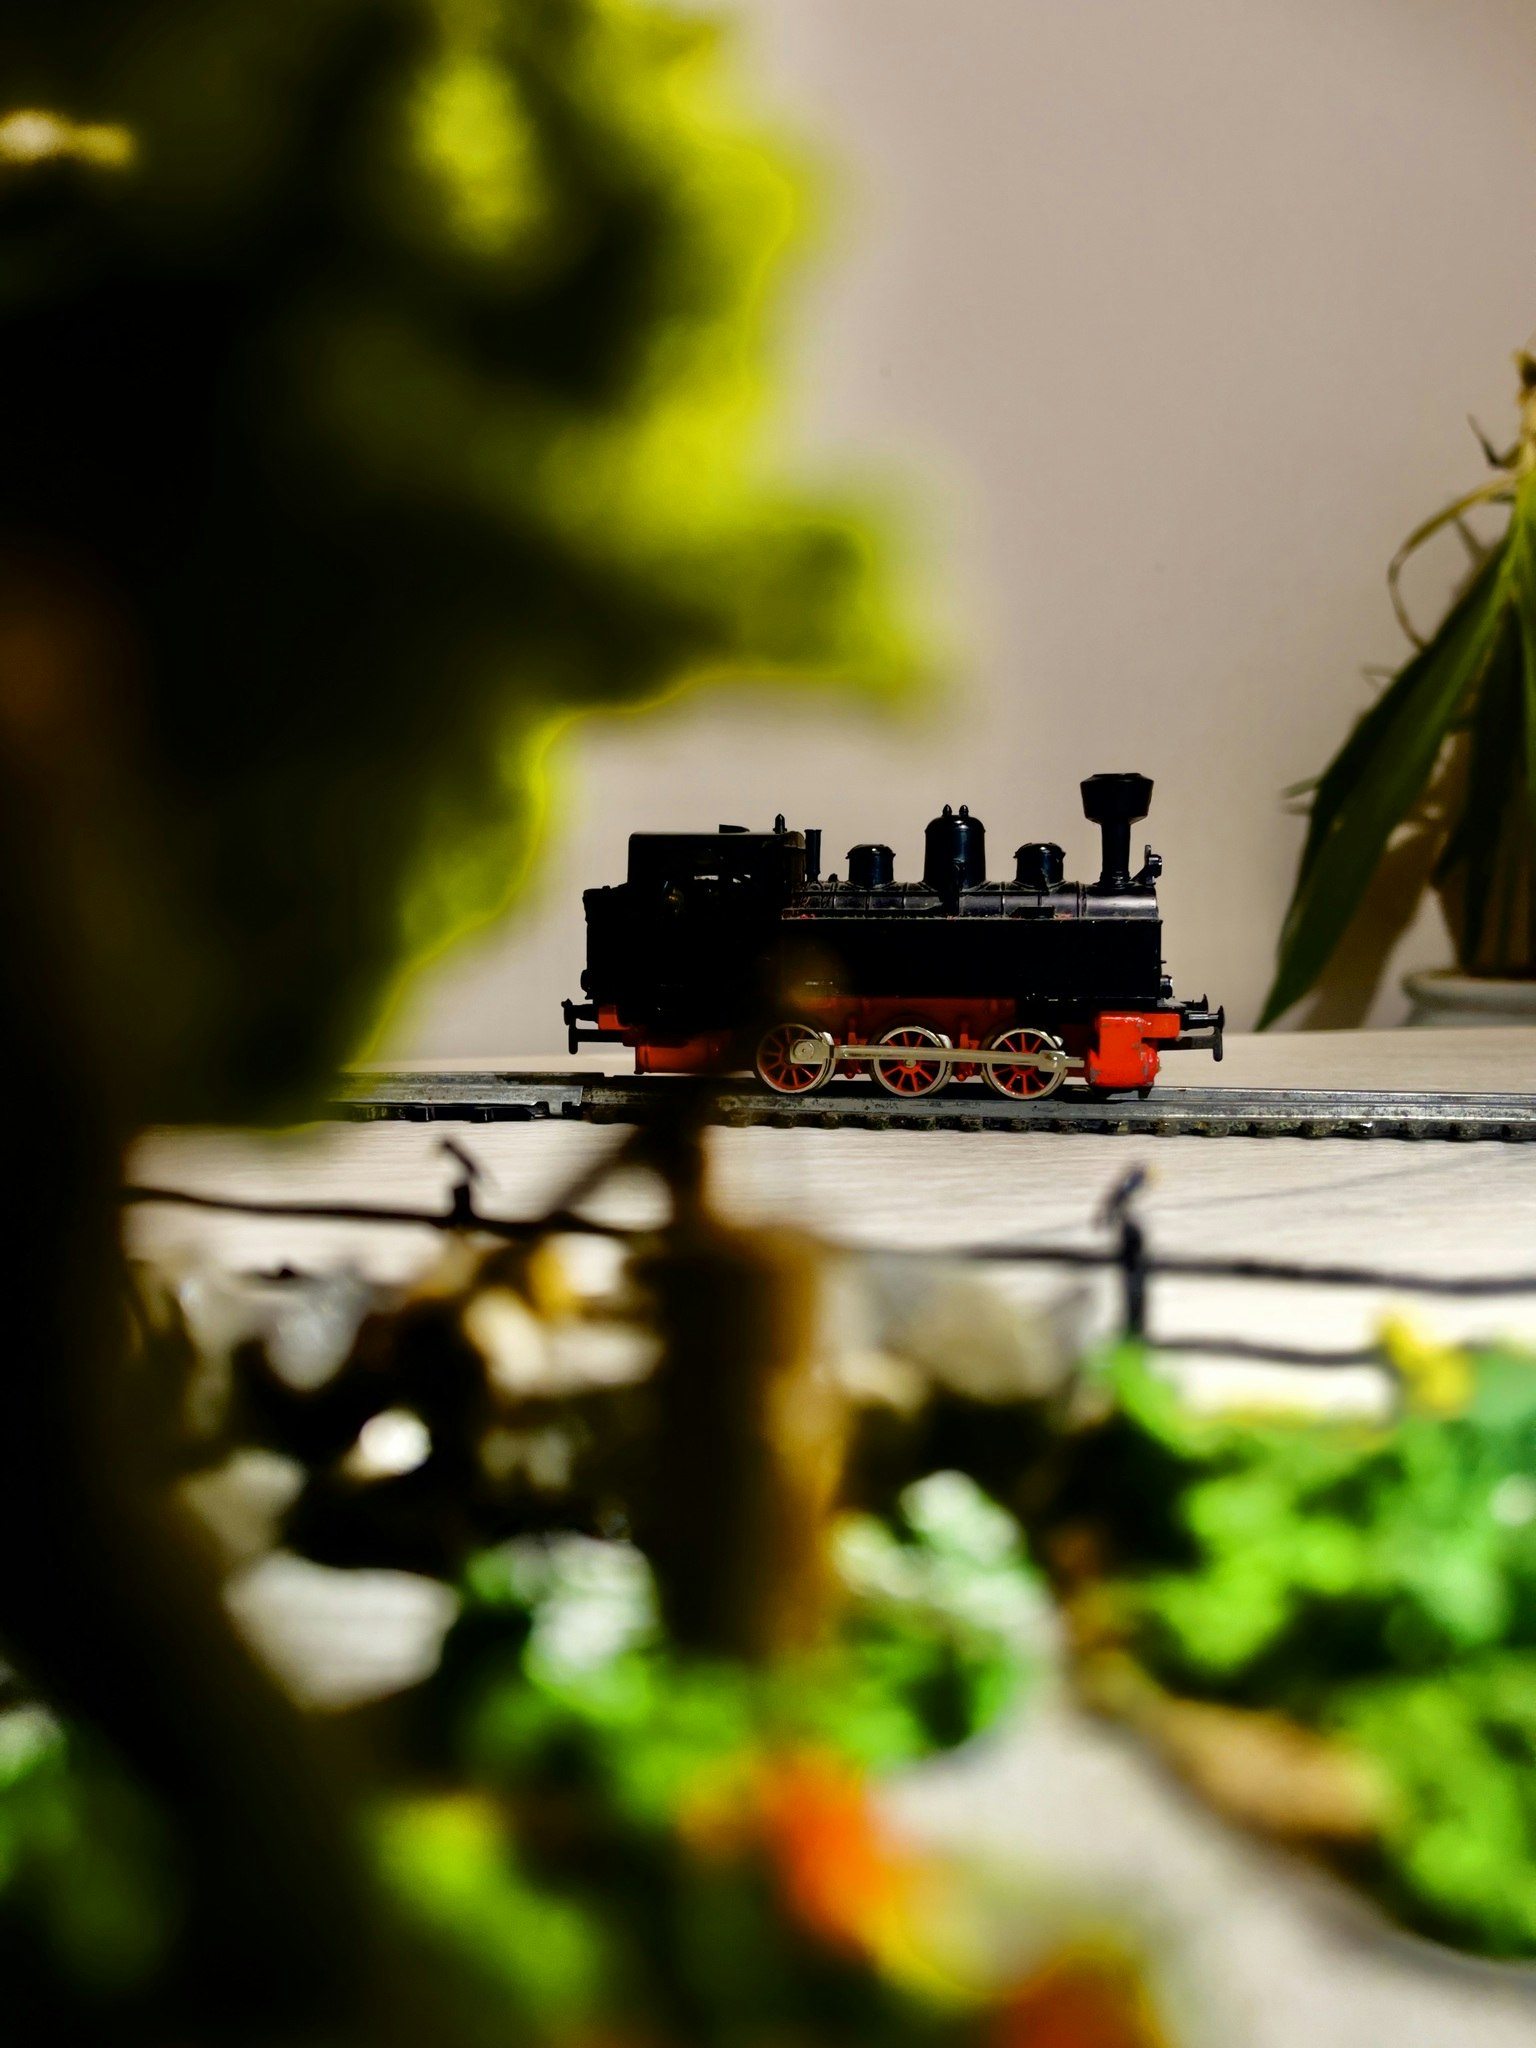 Märklin locomotive